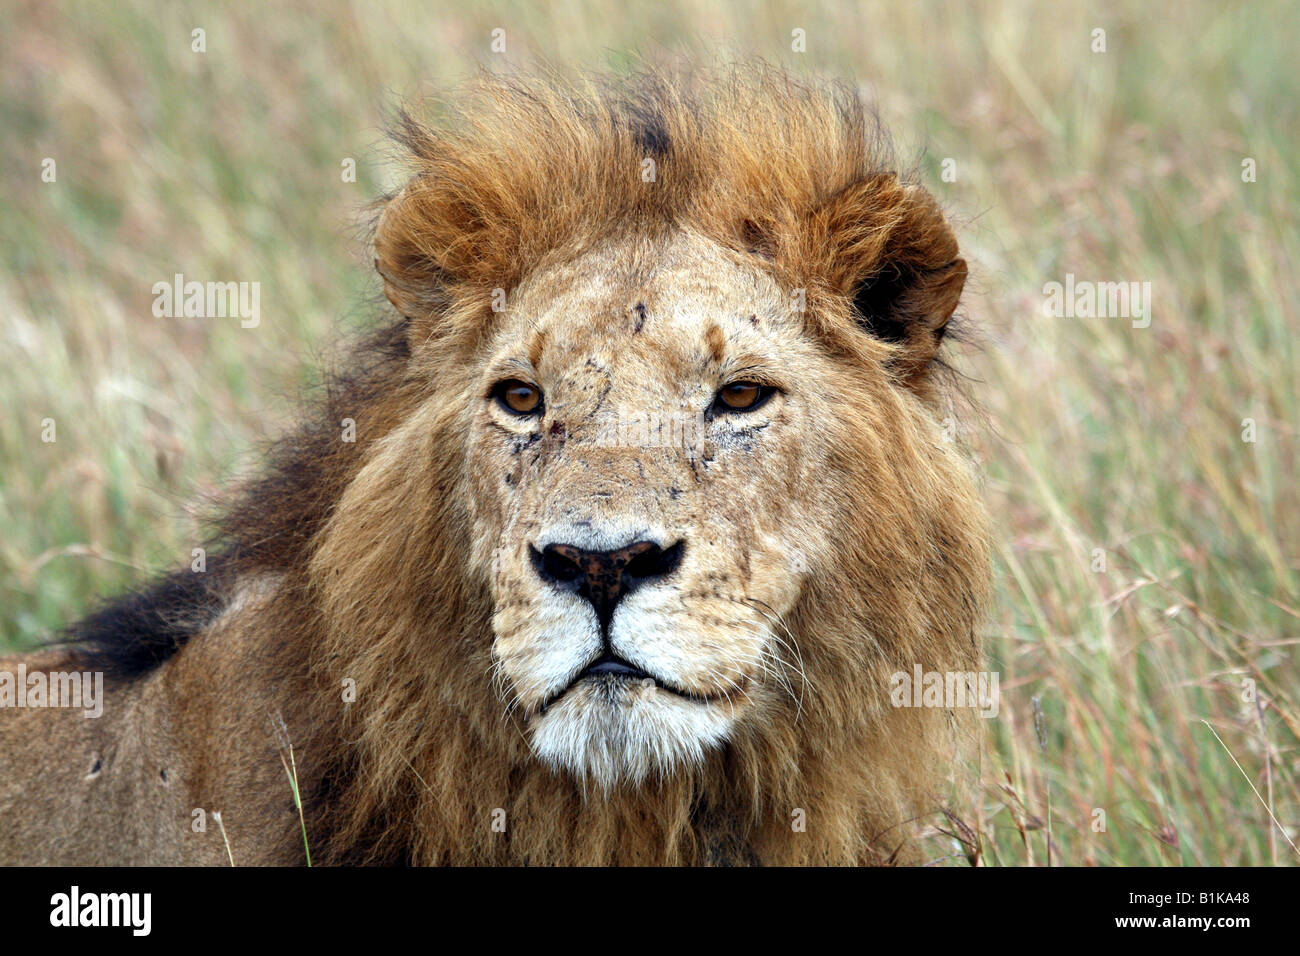 Lion taken in Ngorongora Crater, Tanzania Stock Photo